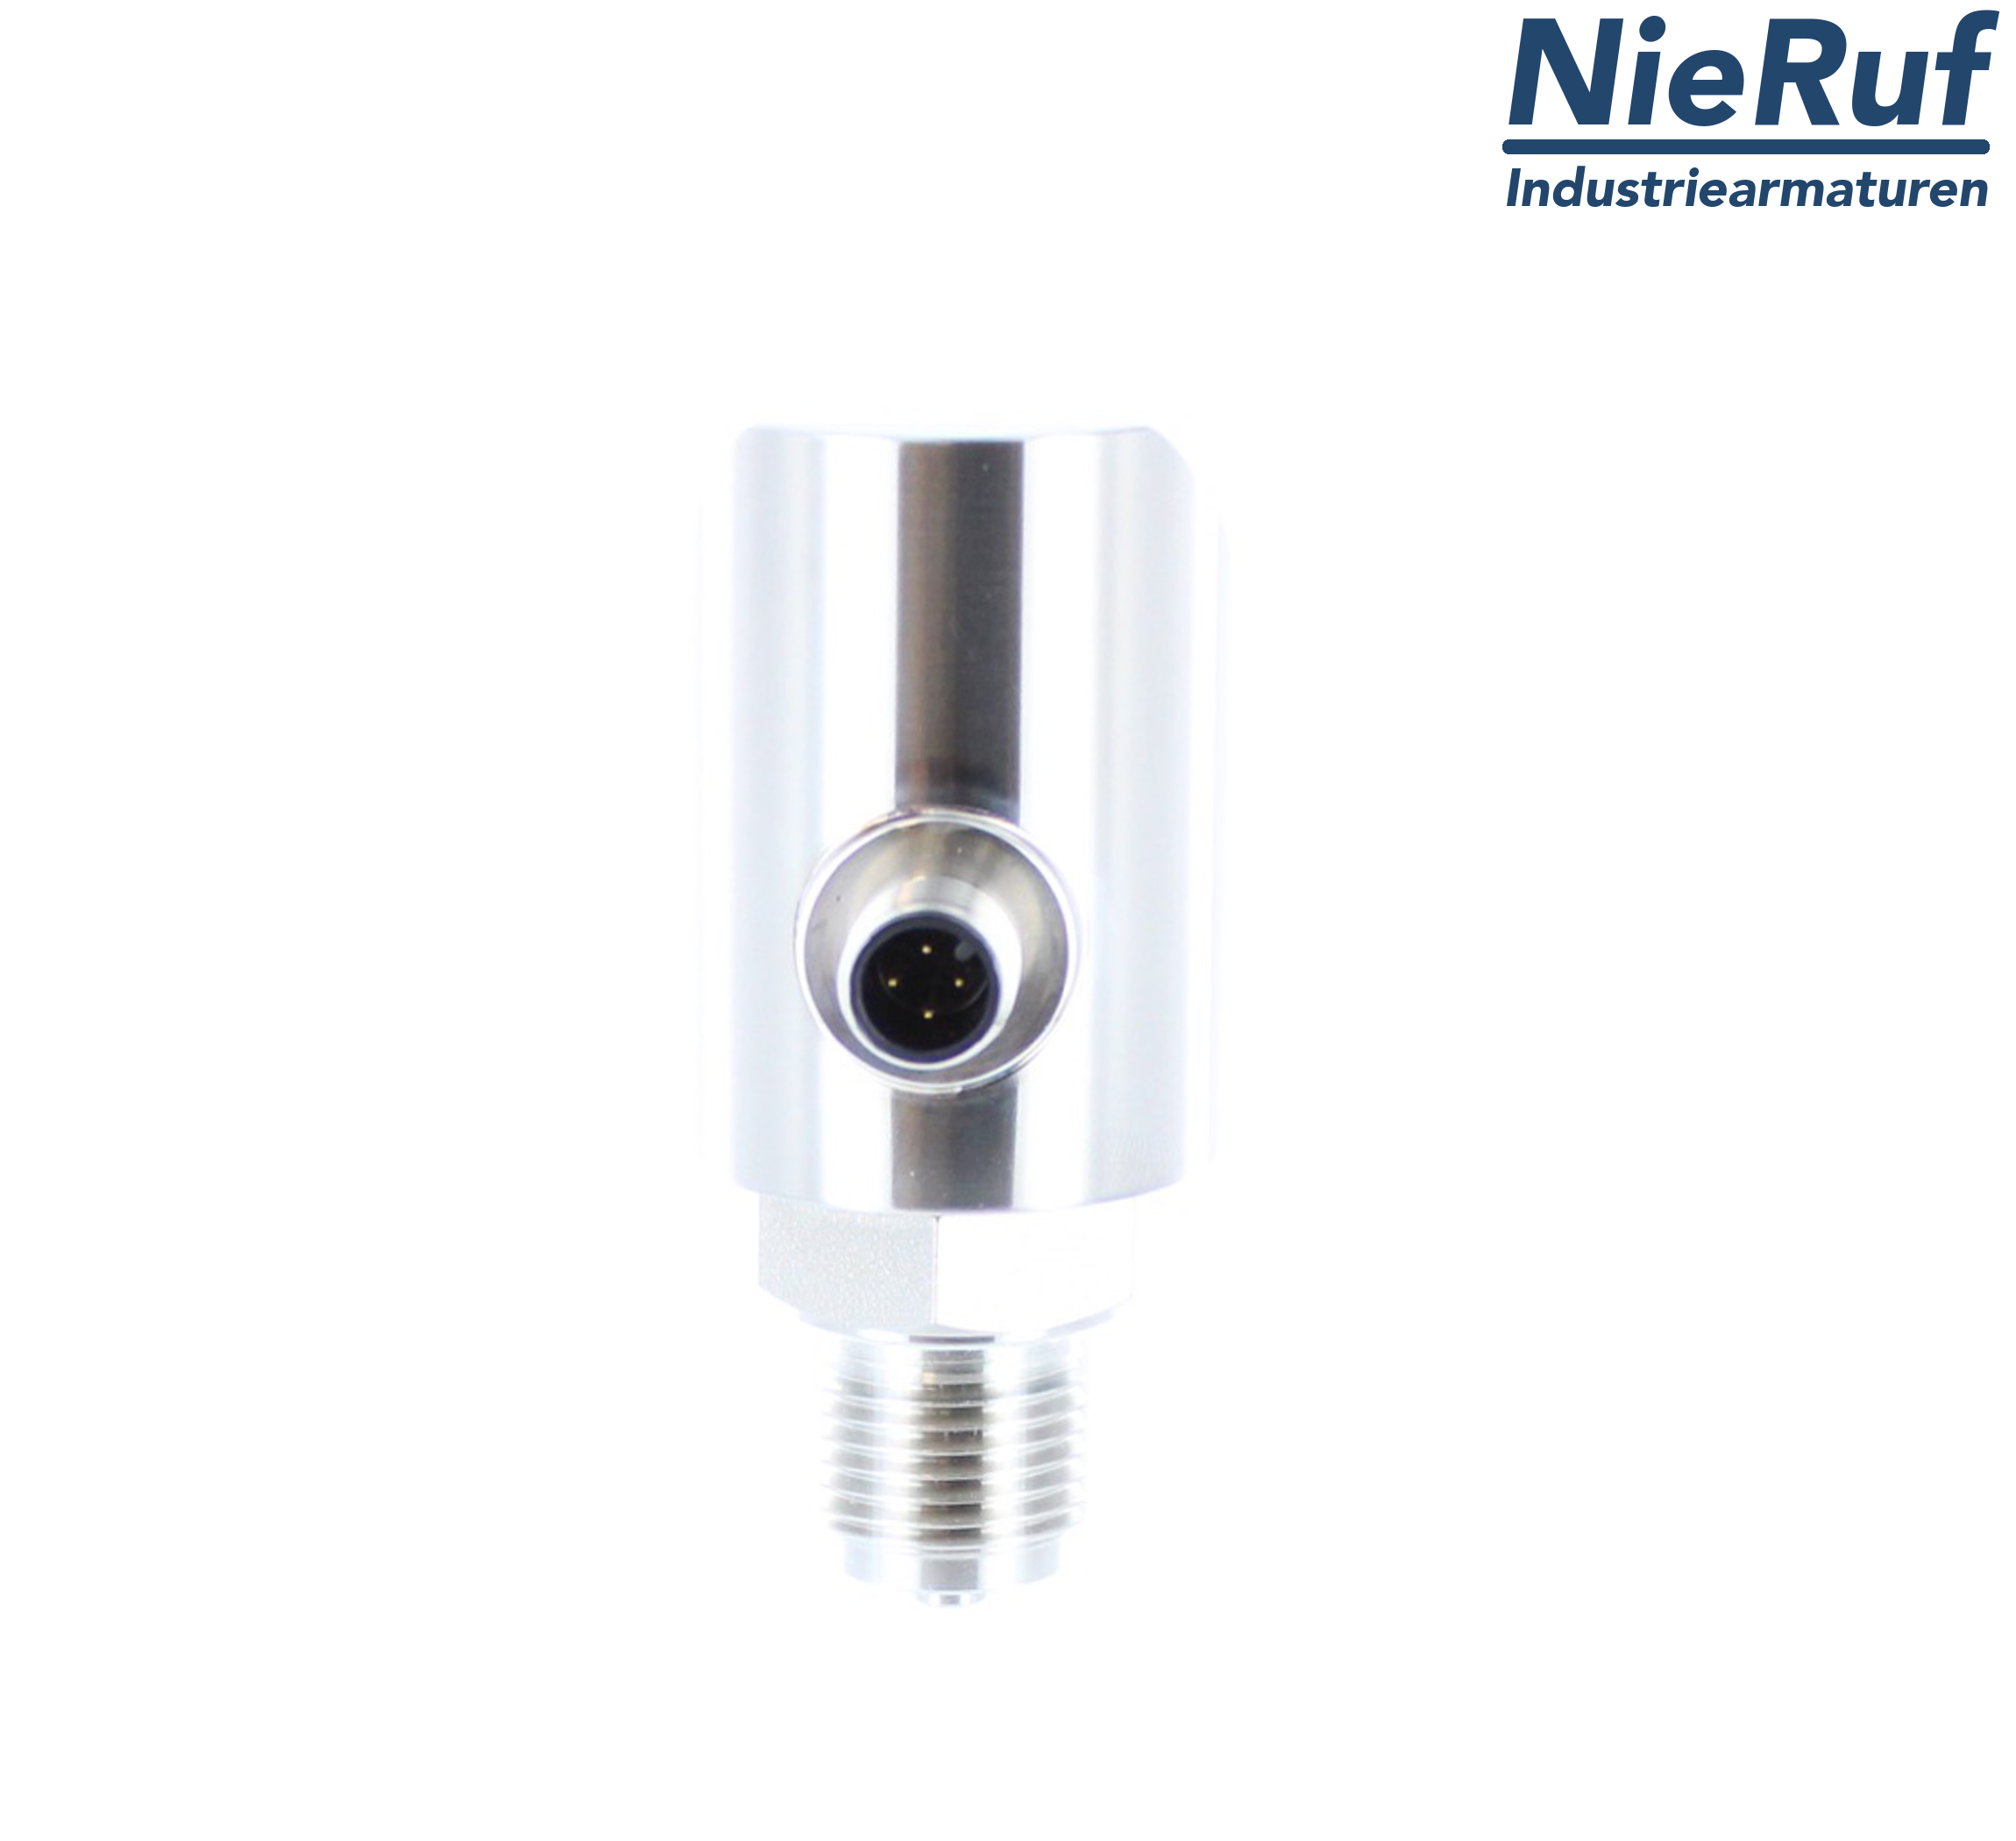 digital pressure sensor G 1/2" B IB 4-wire: 1xPNP, 1x4 - 20mA, Desina FPM 0,0 - 60,0 bar